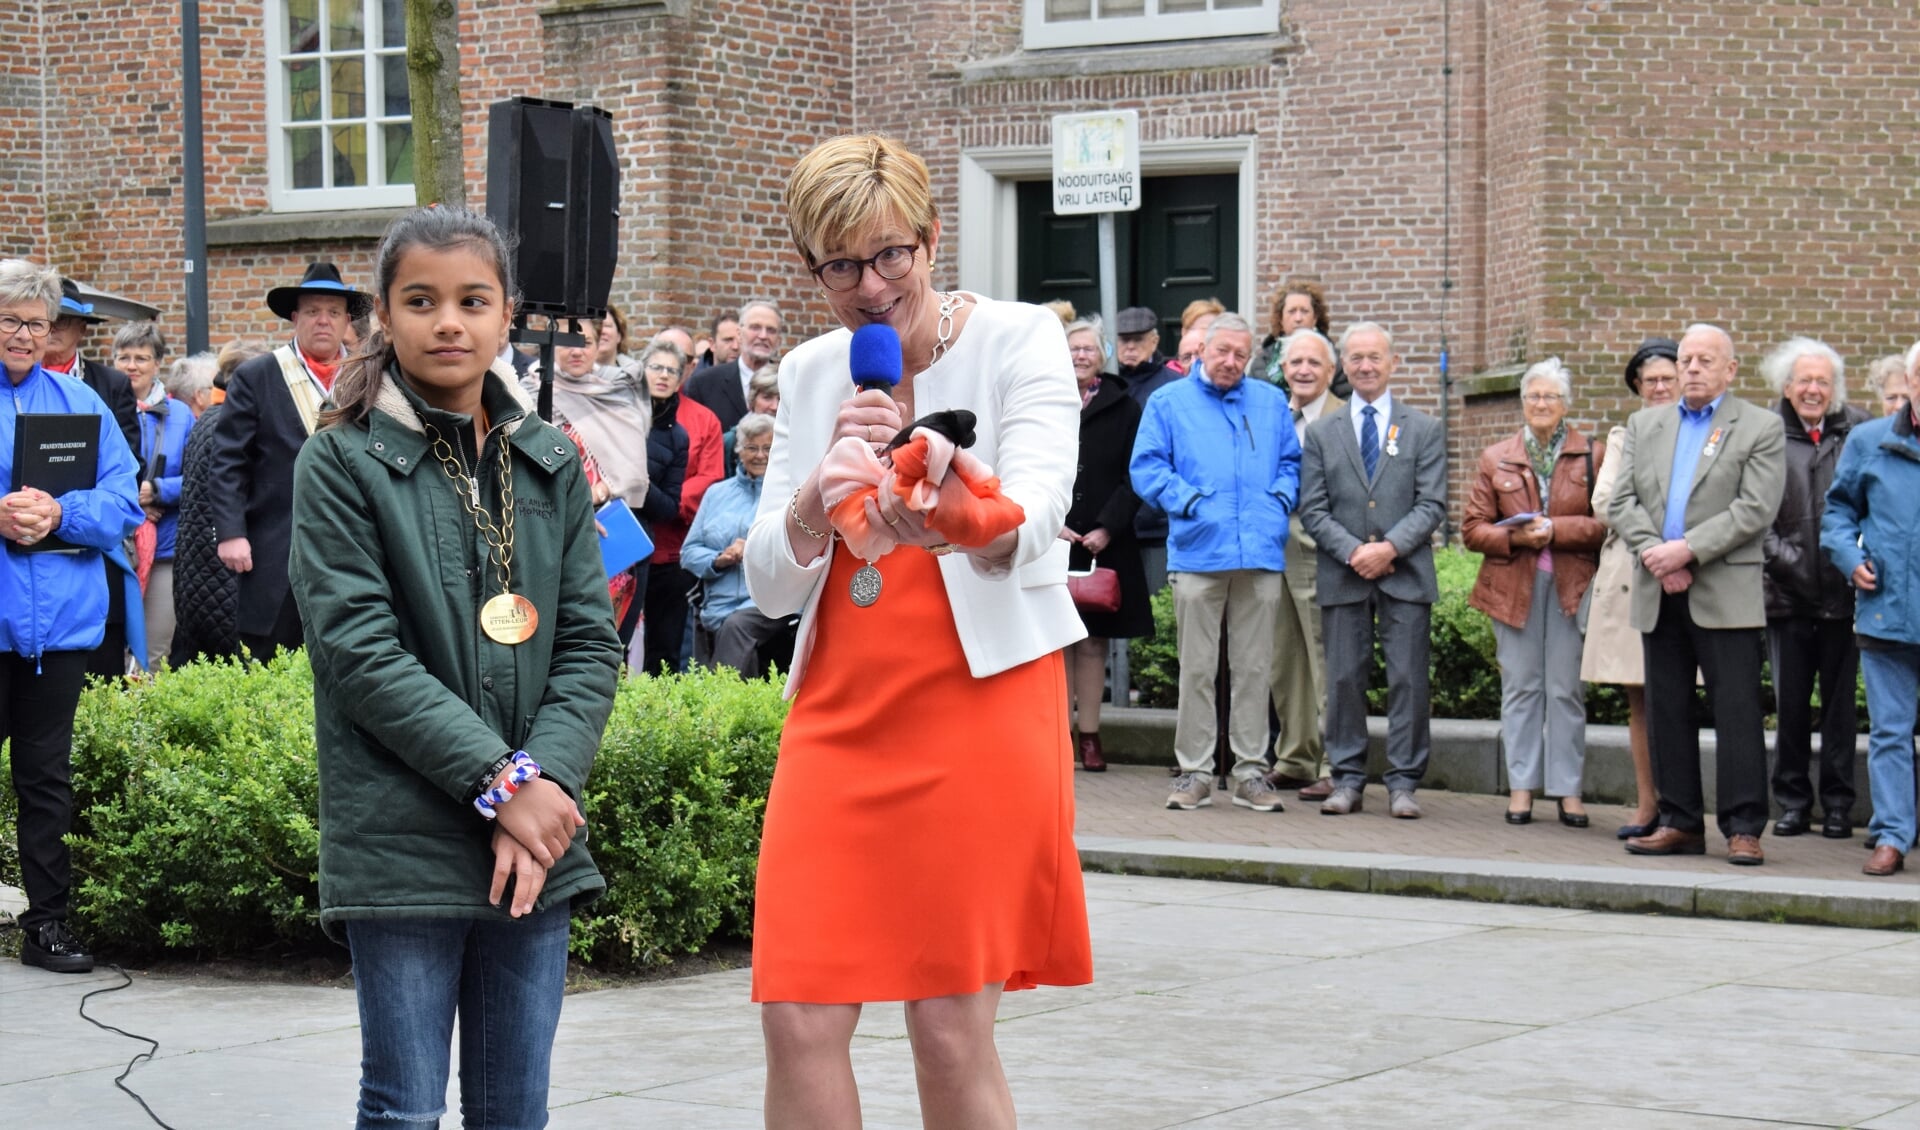 Burgemeester Miranda de Vries en jeugdburgemeester Indy van Dongen openen Konginsdag 2019. FOTO STELLA MARIJNISSEN